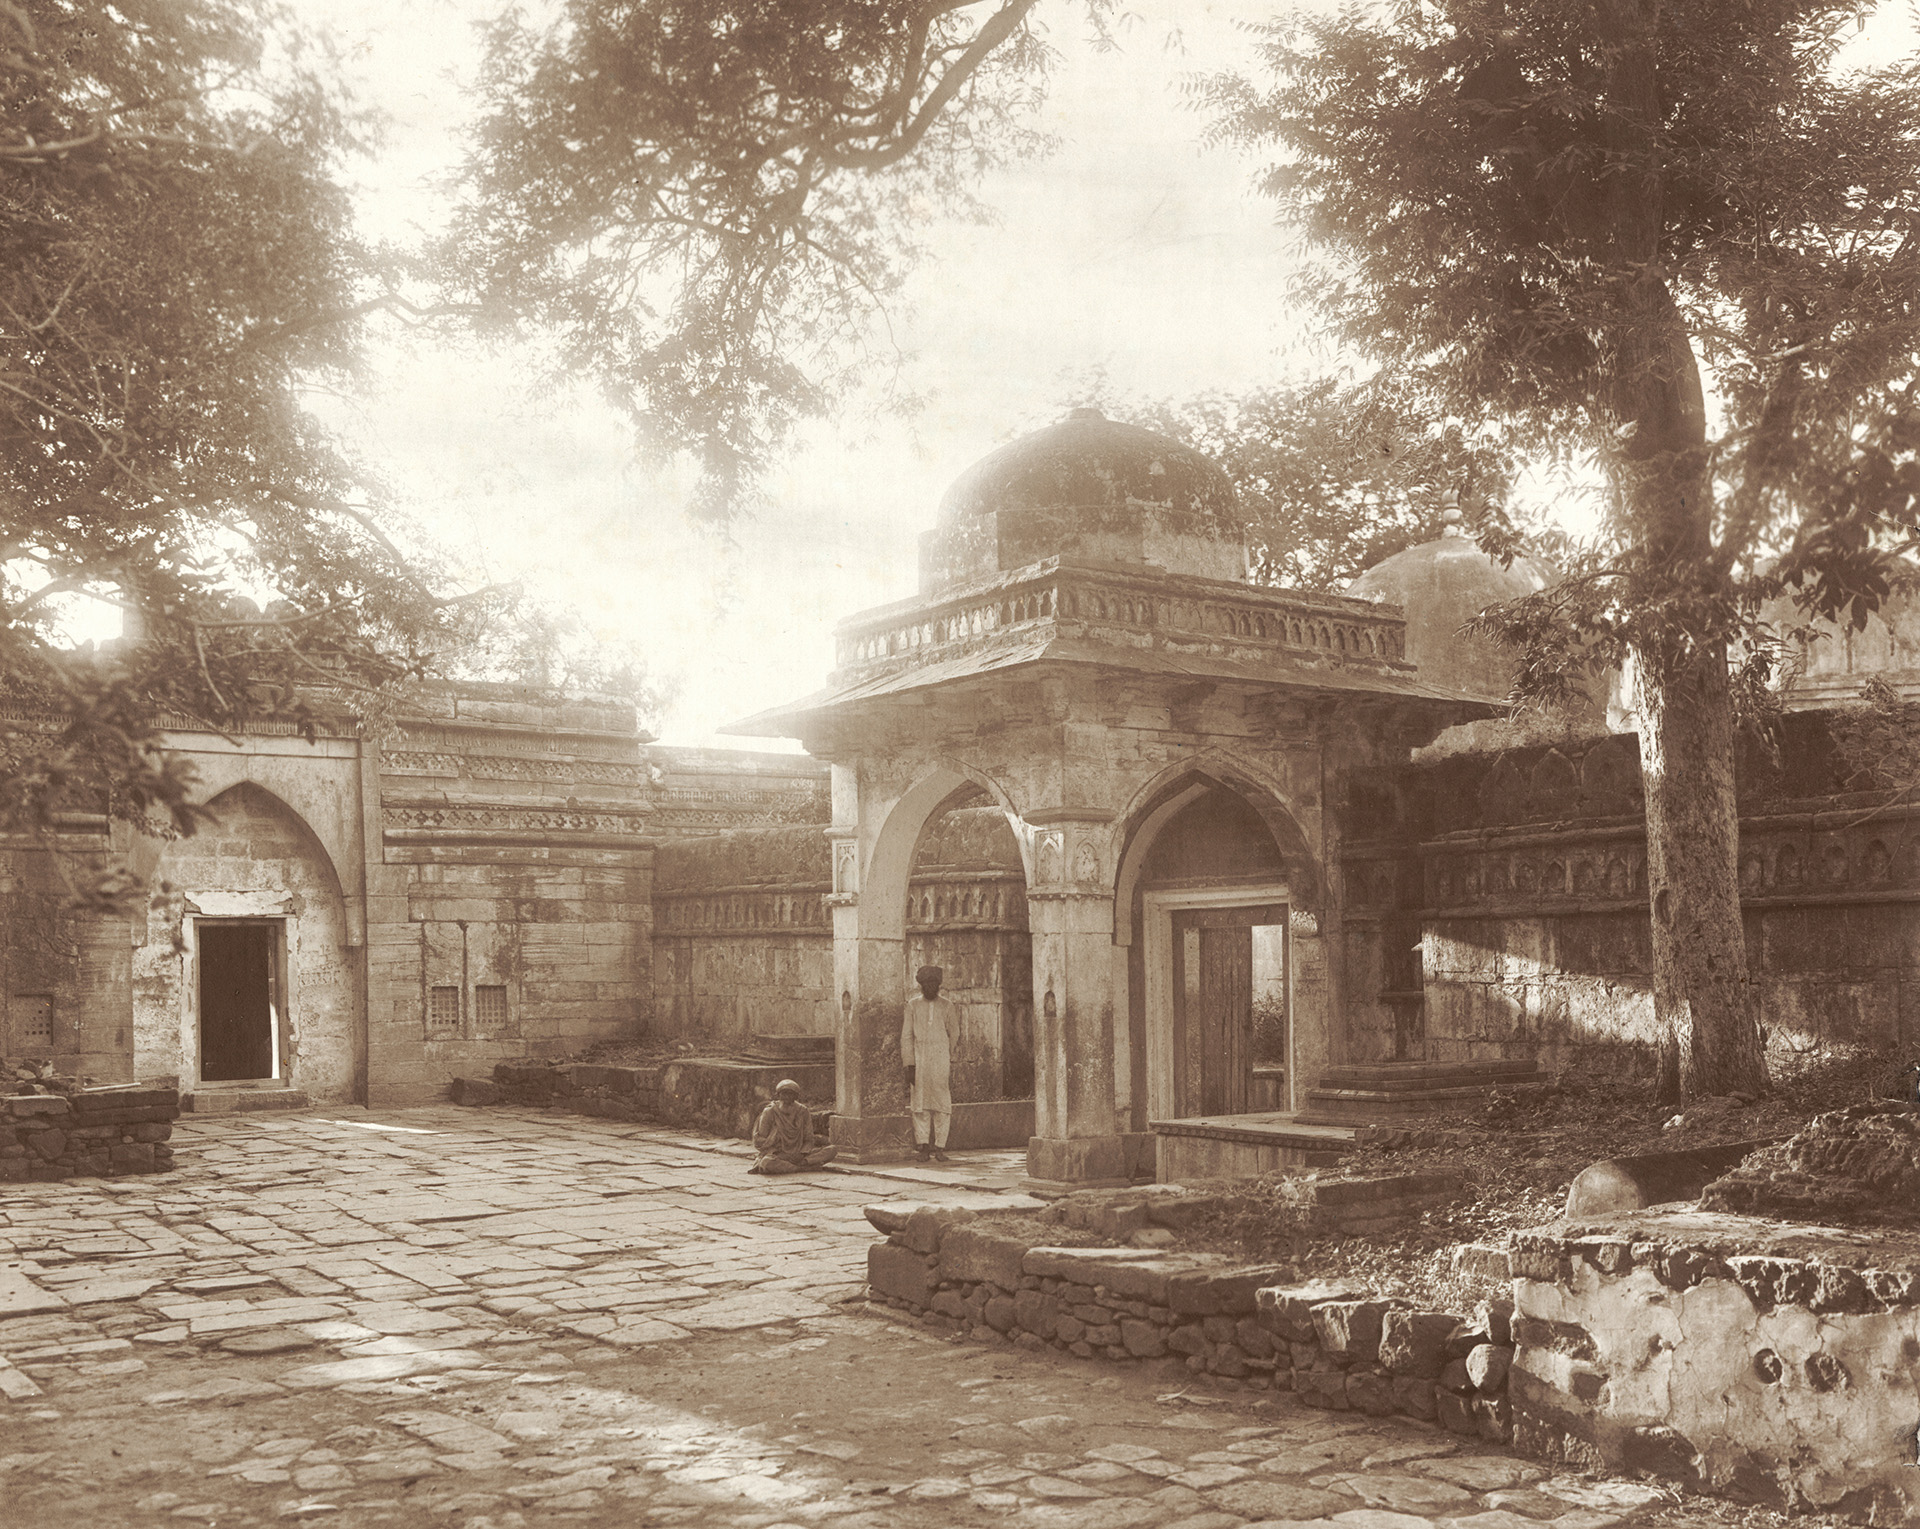 मध्य प्रदेश की कमल मौला मस्जिद का हाल बाबरी जैसा करने की कवायद में हिंदू महासभा